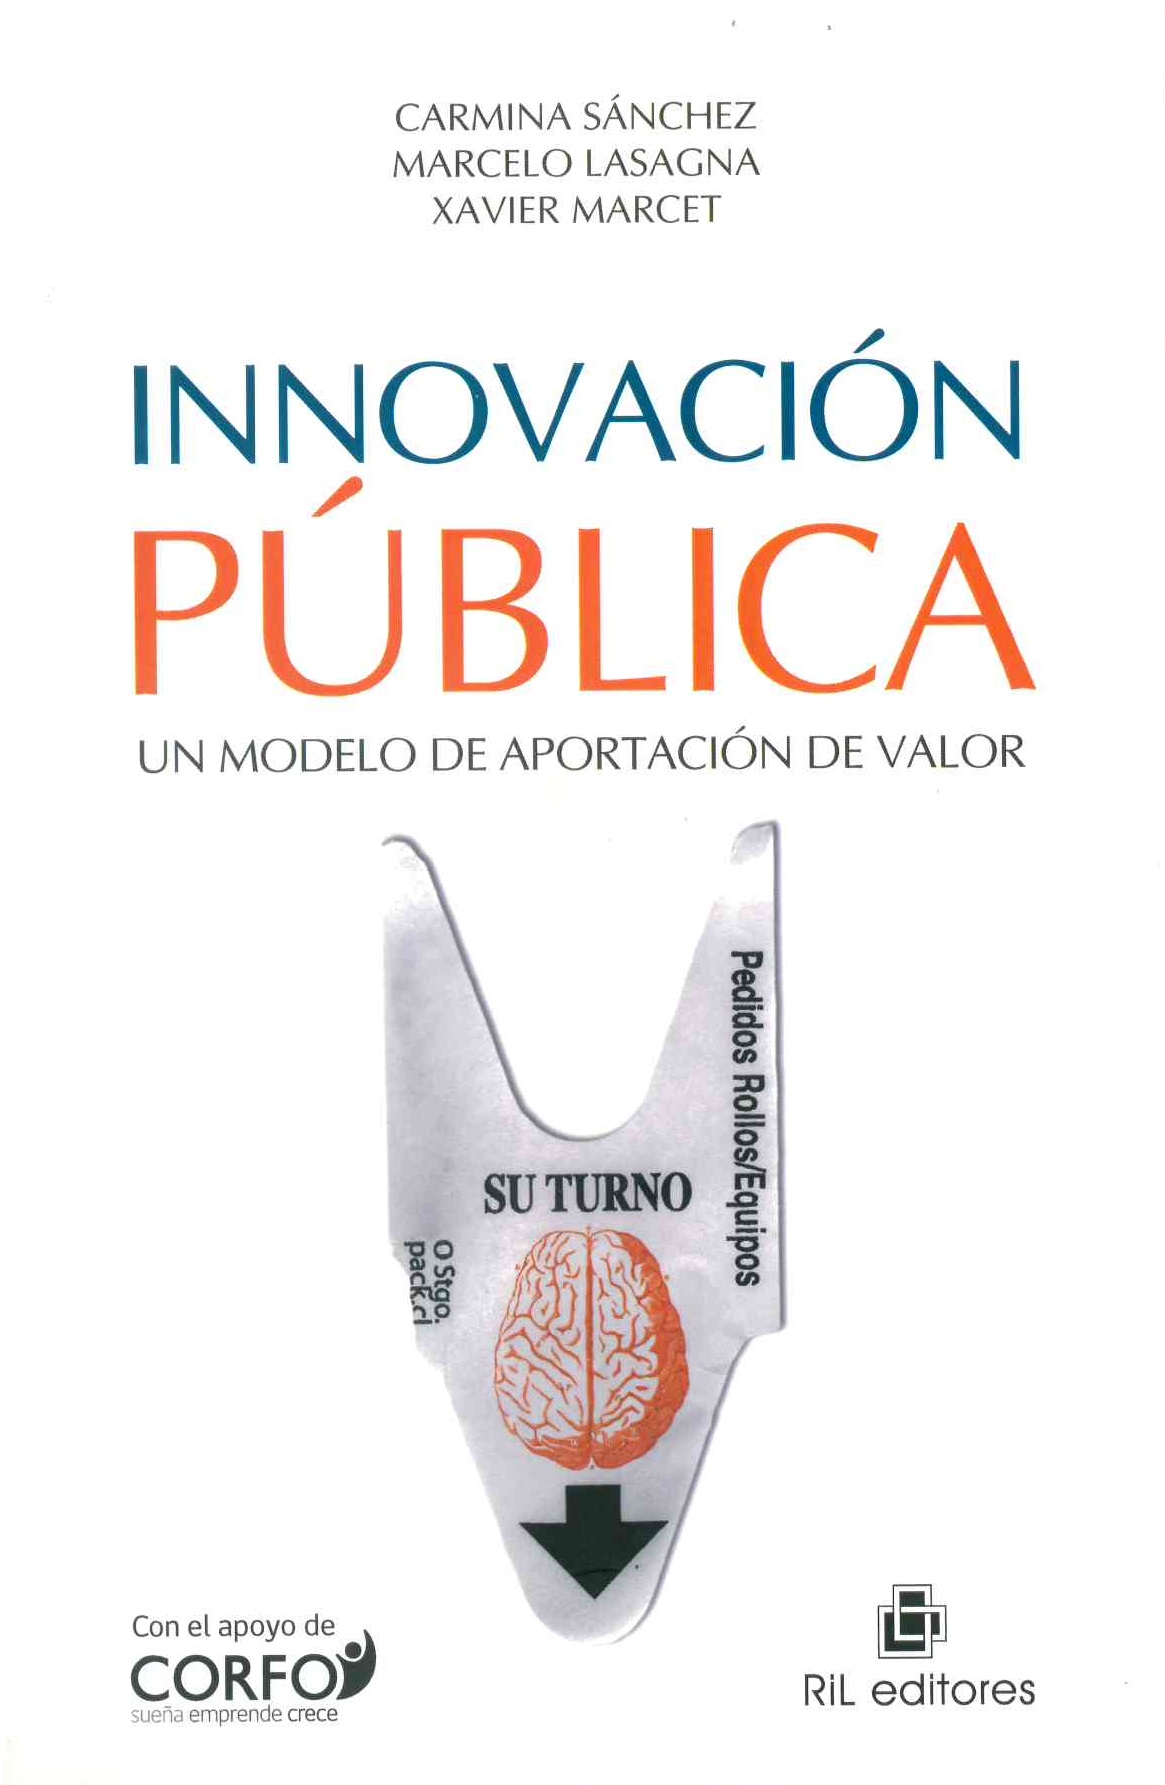 Innovación pública, un modelo de aportación de valor